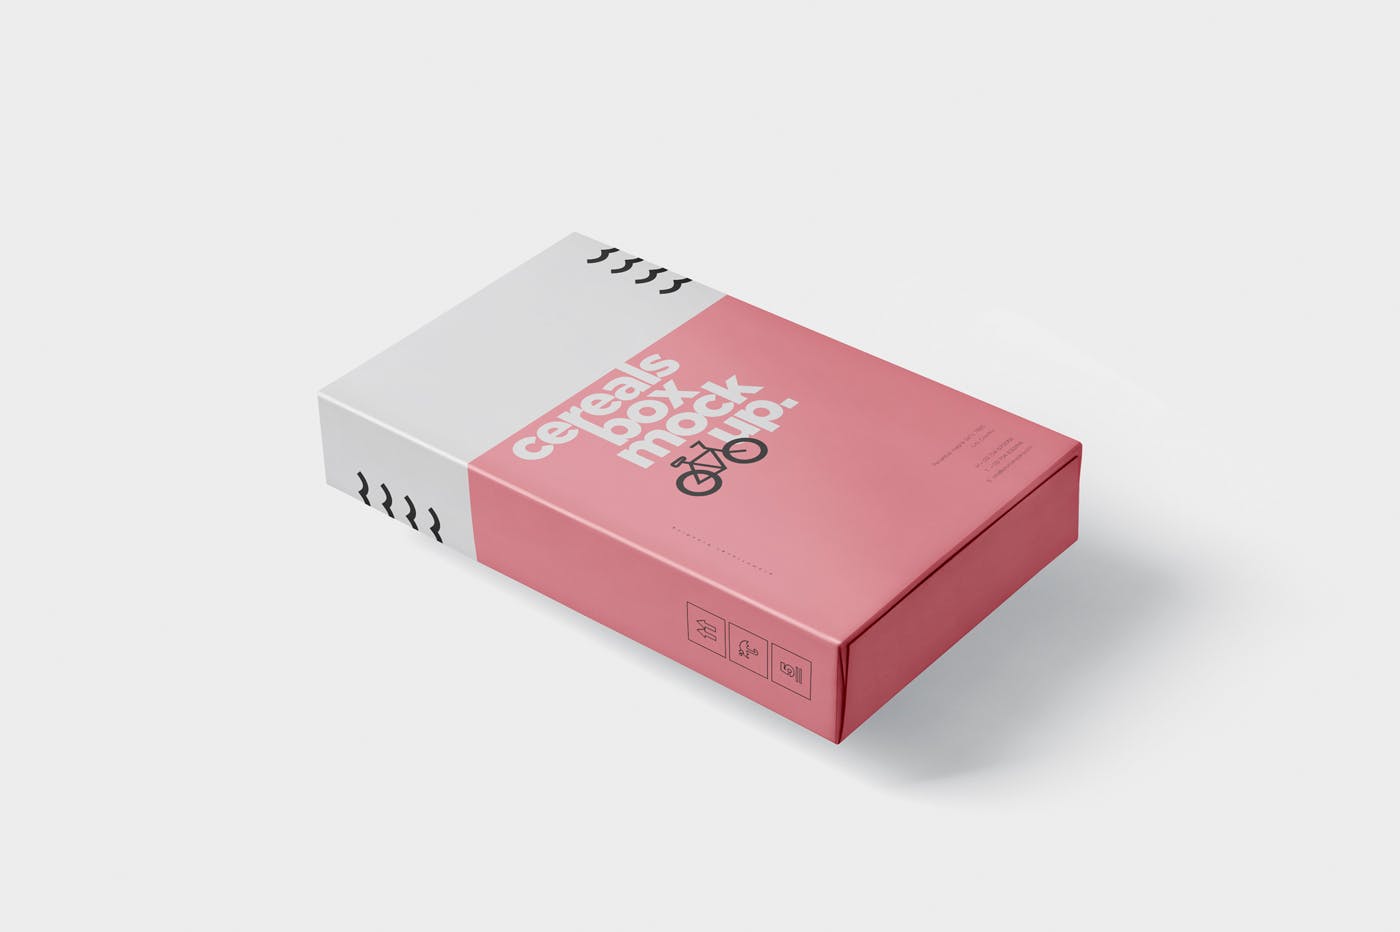 香烟/避孕套/扑克牌适用的超薄包装盒外观设计样机 Cereals Box Mockup – Slim Size Box插图(4)